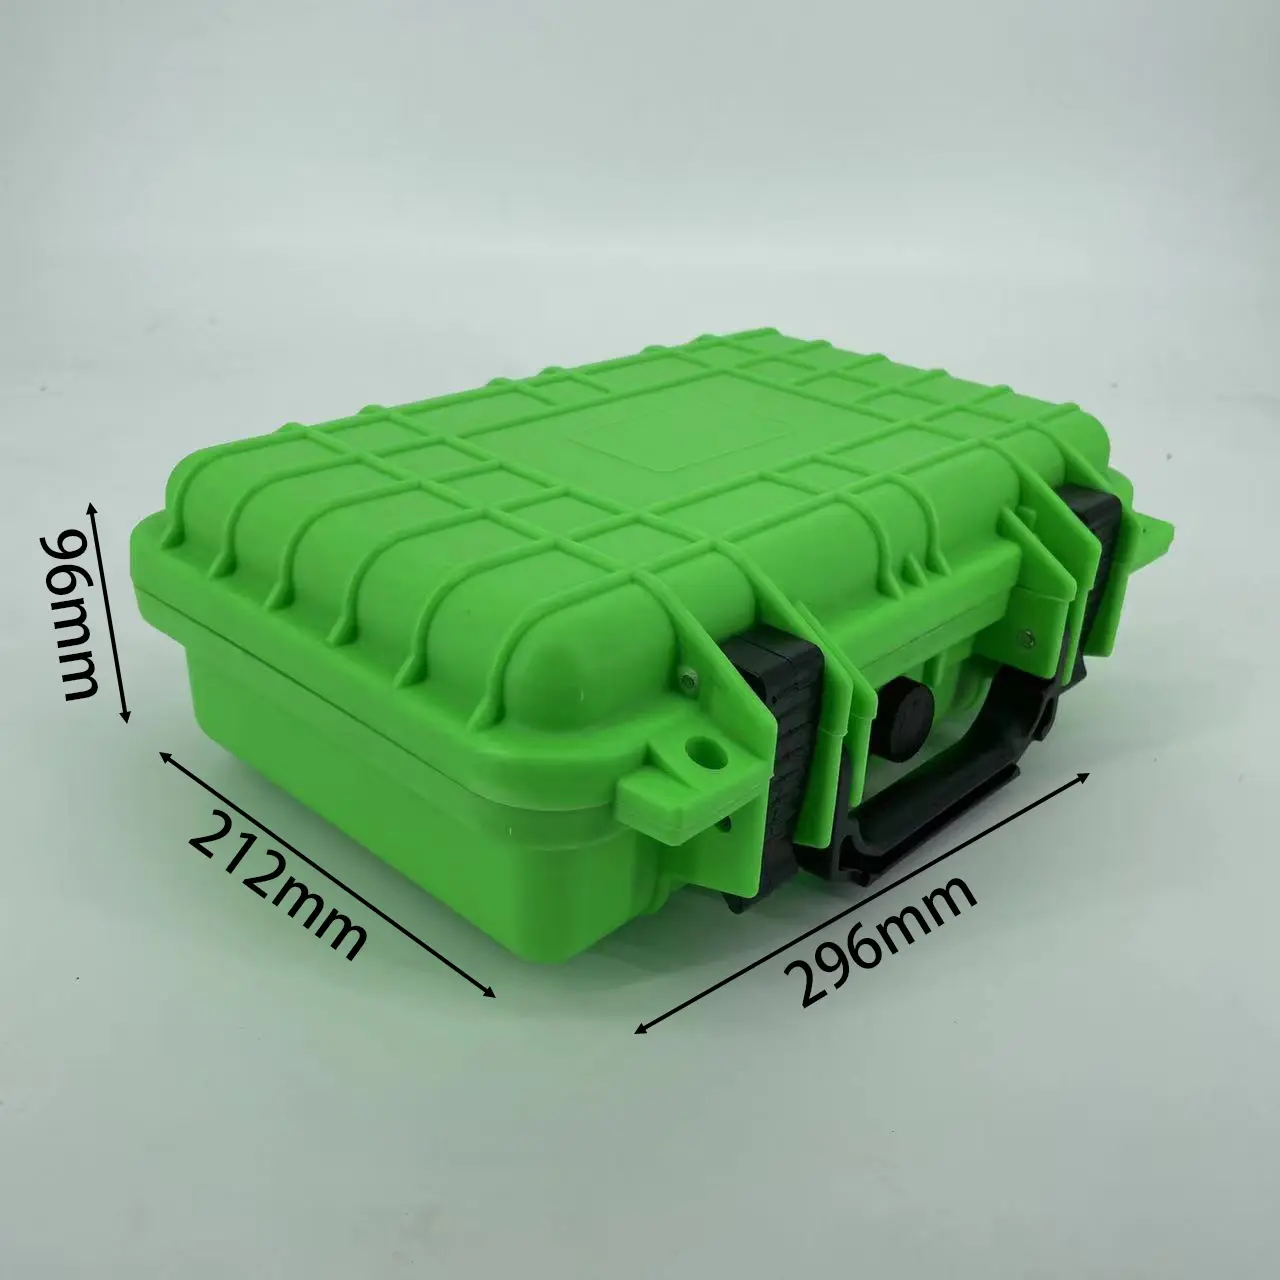 Estuche verde de DPC034-1 de alta gama, Maleta de plástico impermeable IP67, kit de primeros auxilios de vuelo, protector con inserto de espuma